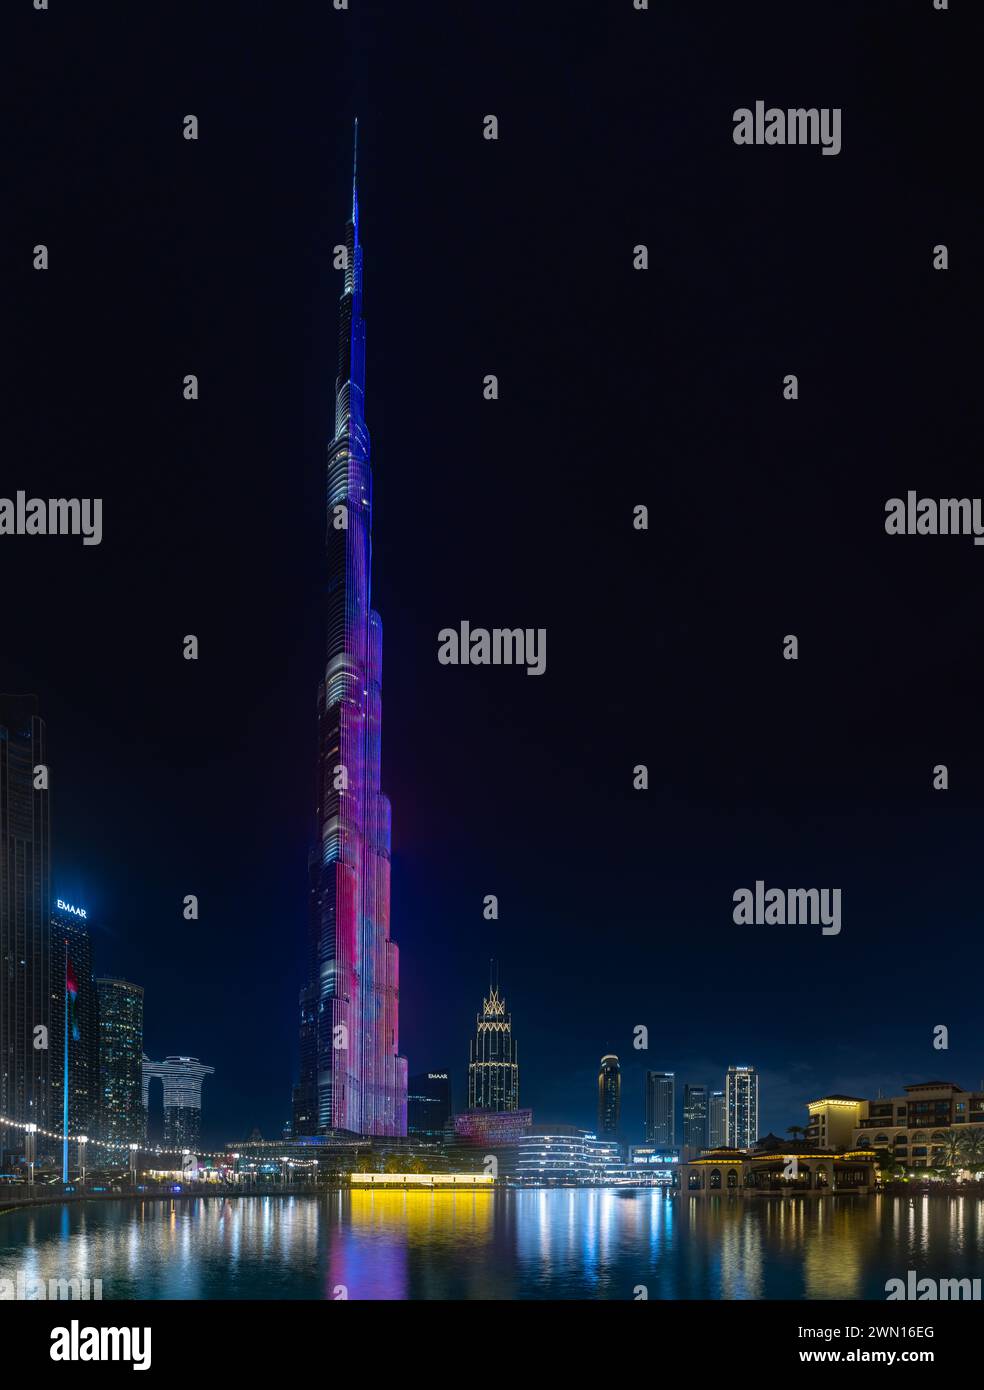 Una imagen del icónico Burj Khalifa con su espectáculo de luces, y los edificios del centro de Dubai y el lago Burj Khalifa, en la noche. Foto de stock